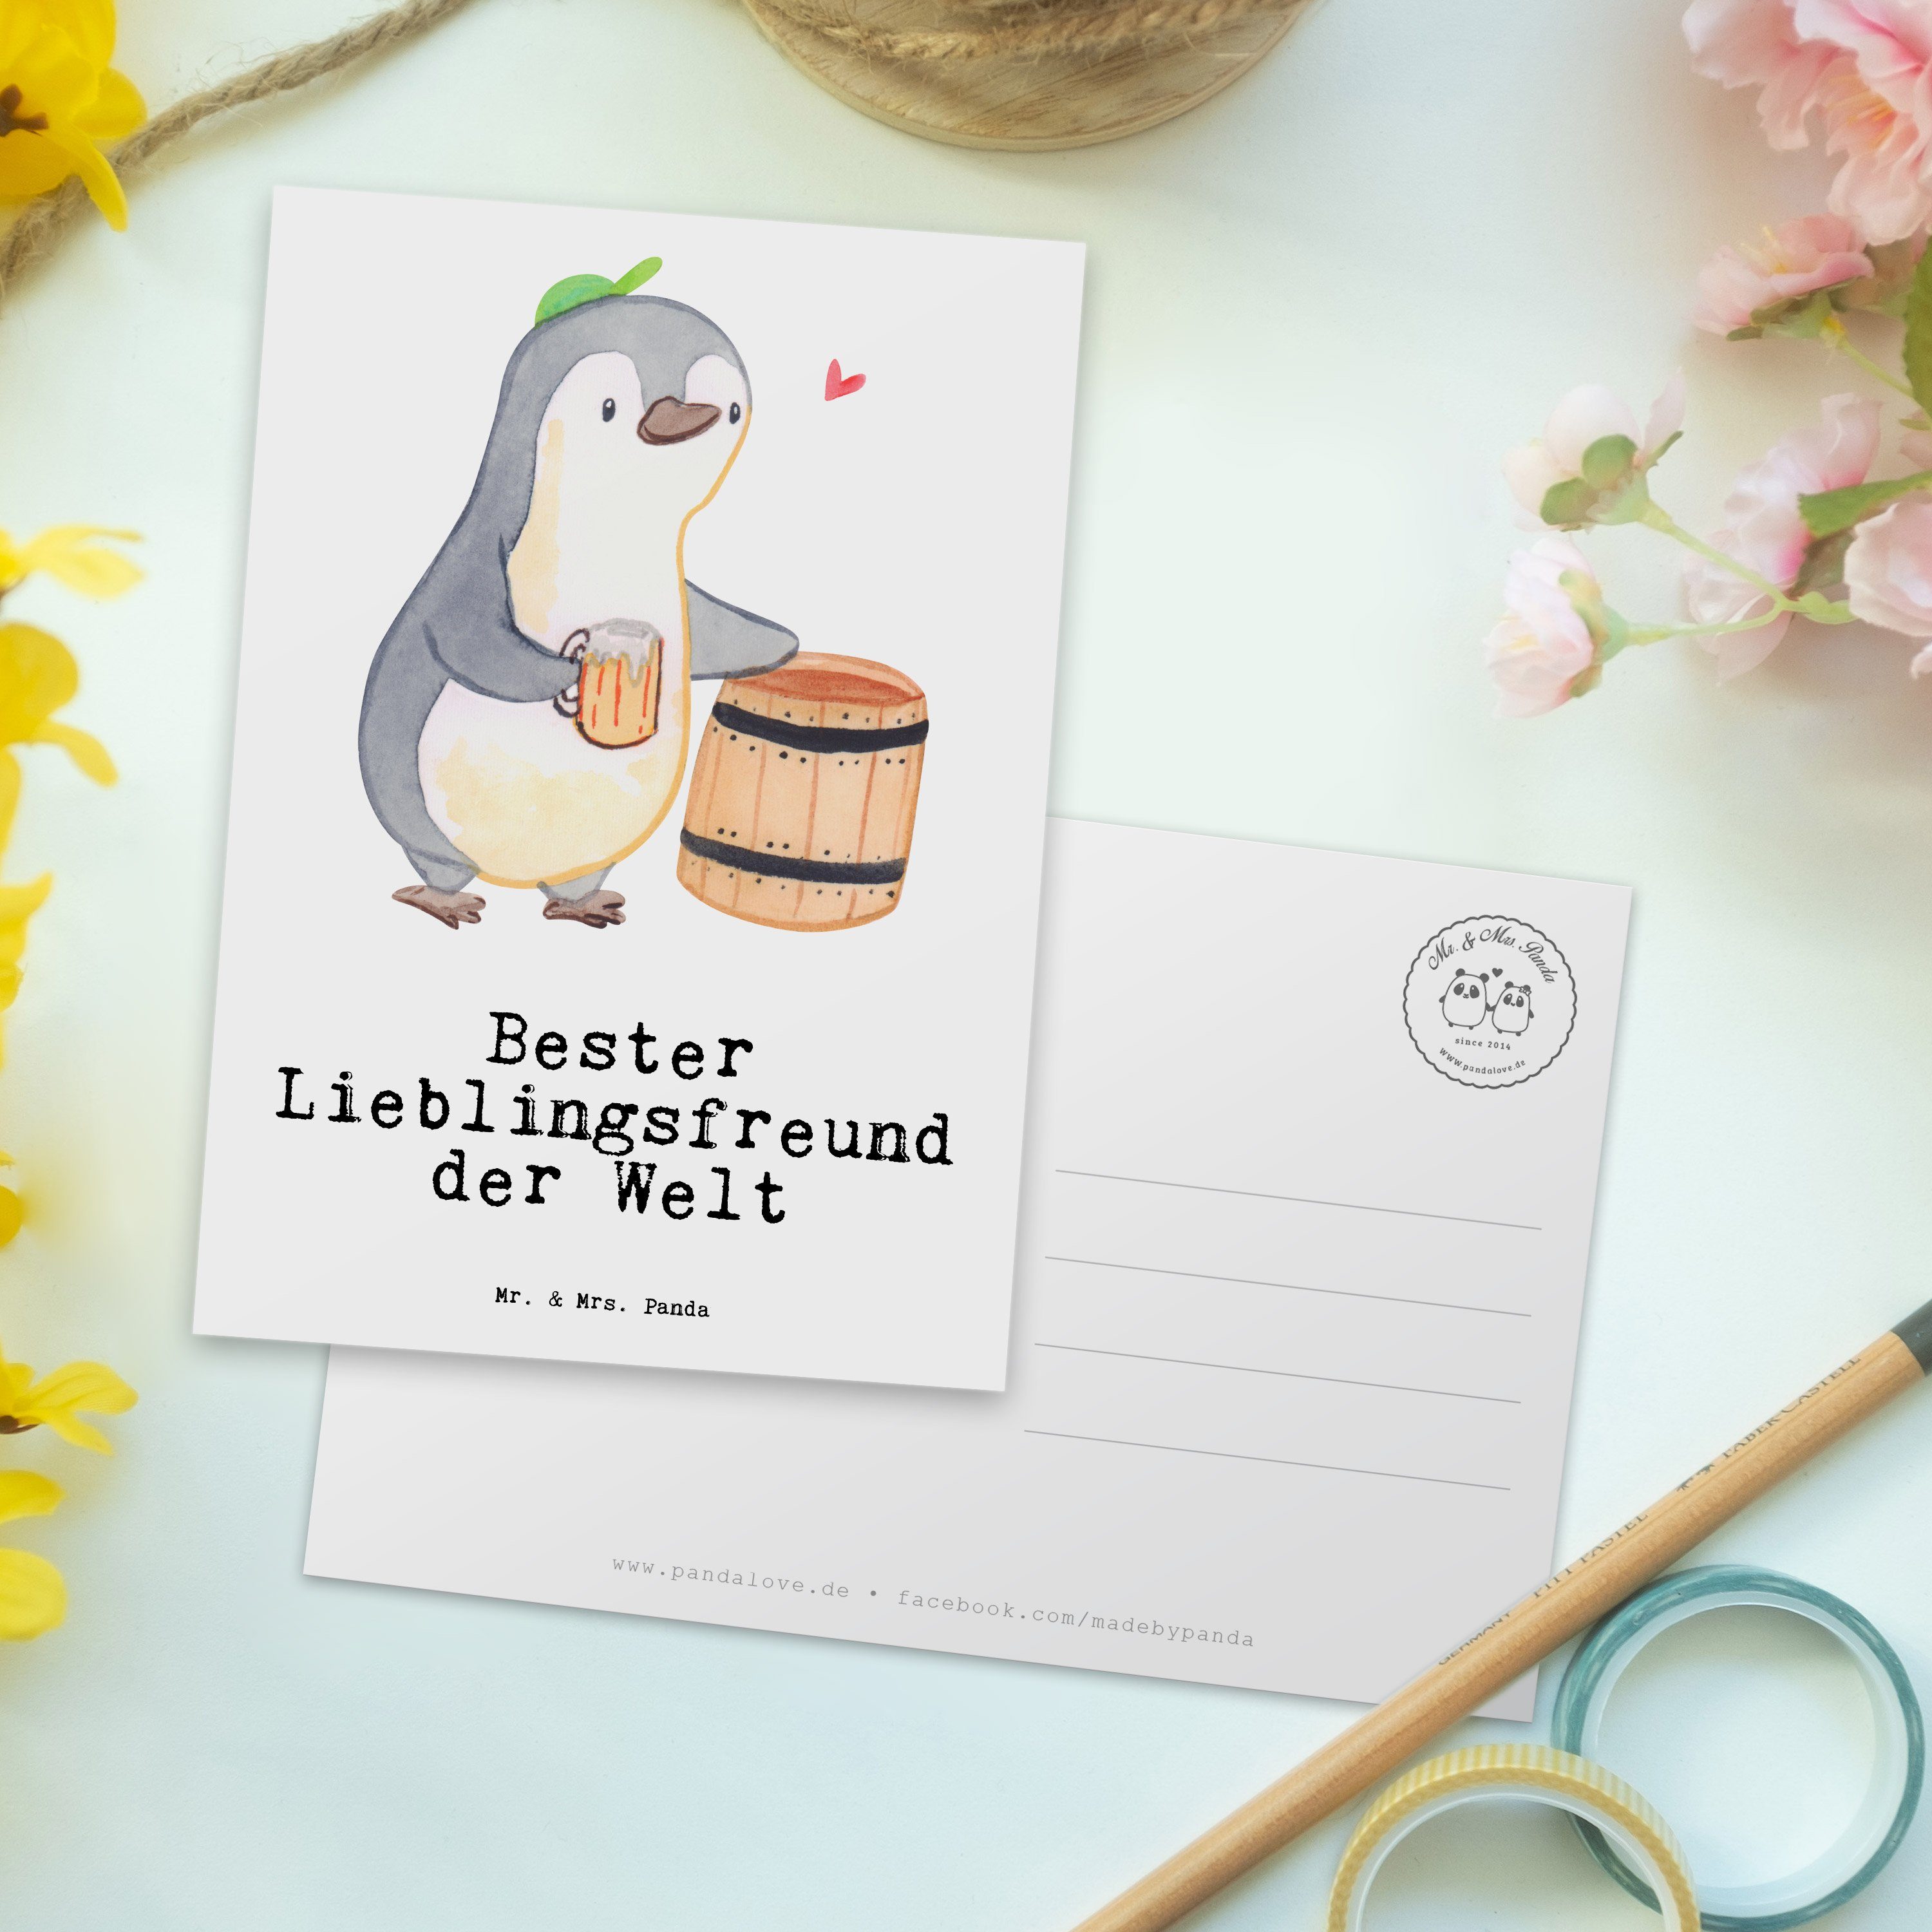 Mr. & Mrs. Panda Postkarte Geburtstagsgeschenk, Liebe, Welt Lieblingsfreund Weiß Geschenkkarte, - Geschenkidee, Geschenk, der Bester Grußkarte - Einladung, Partner, Pinguin